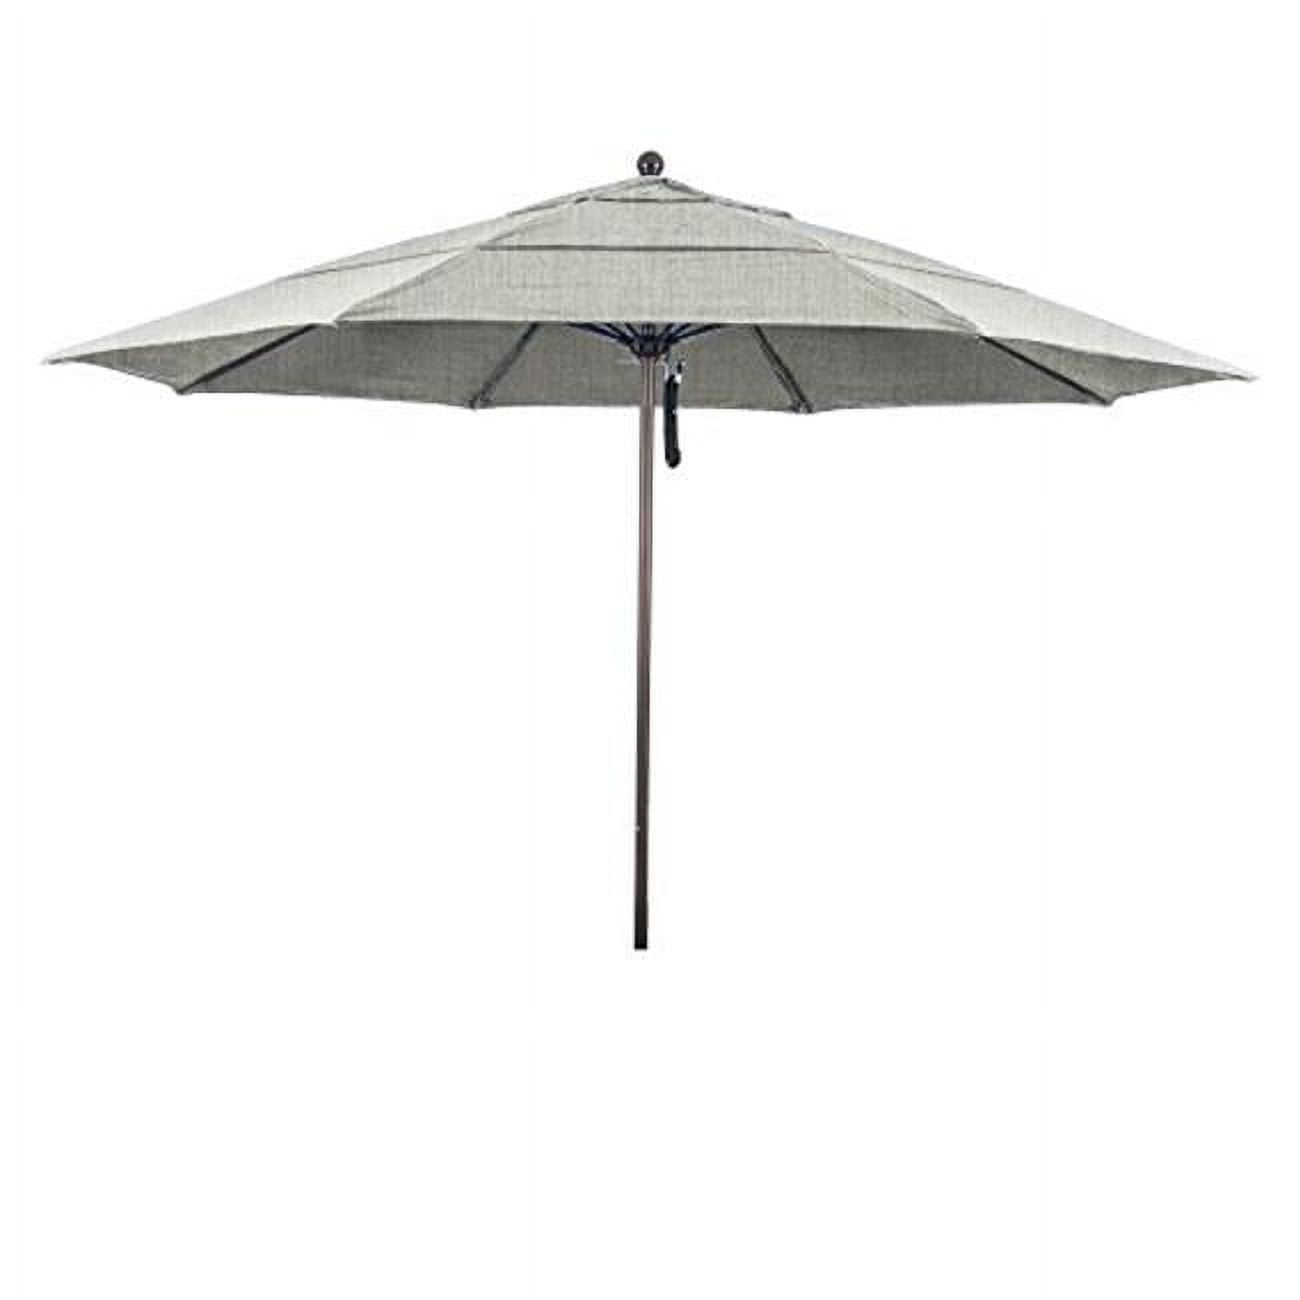 Picture of California Umbrella ALTO118117-5402-DWV 11 ft. Round Aluminum & Fiberglass Sunbrella Granite Umbrella